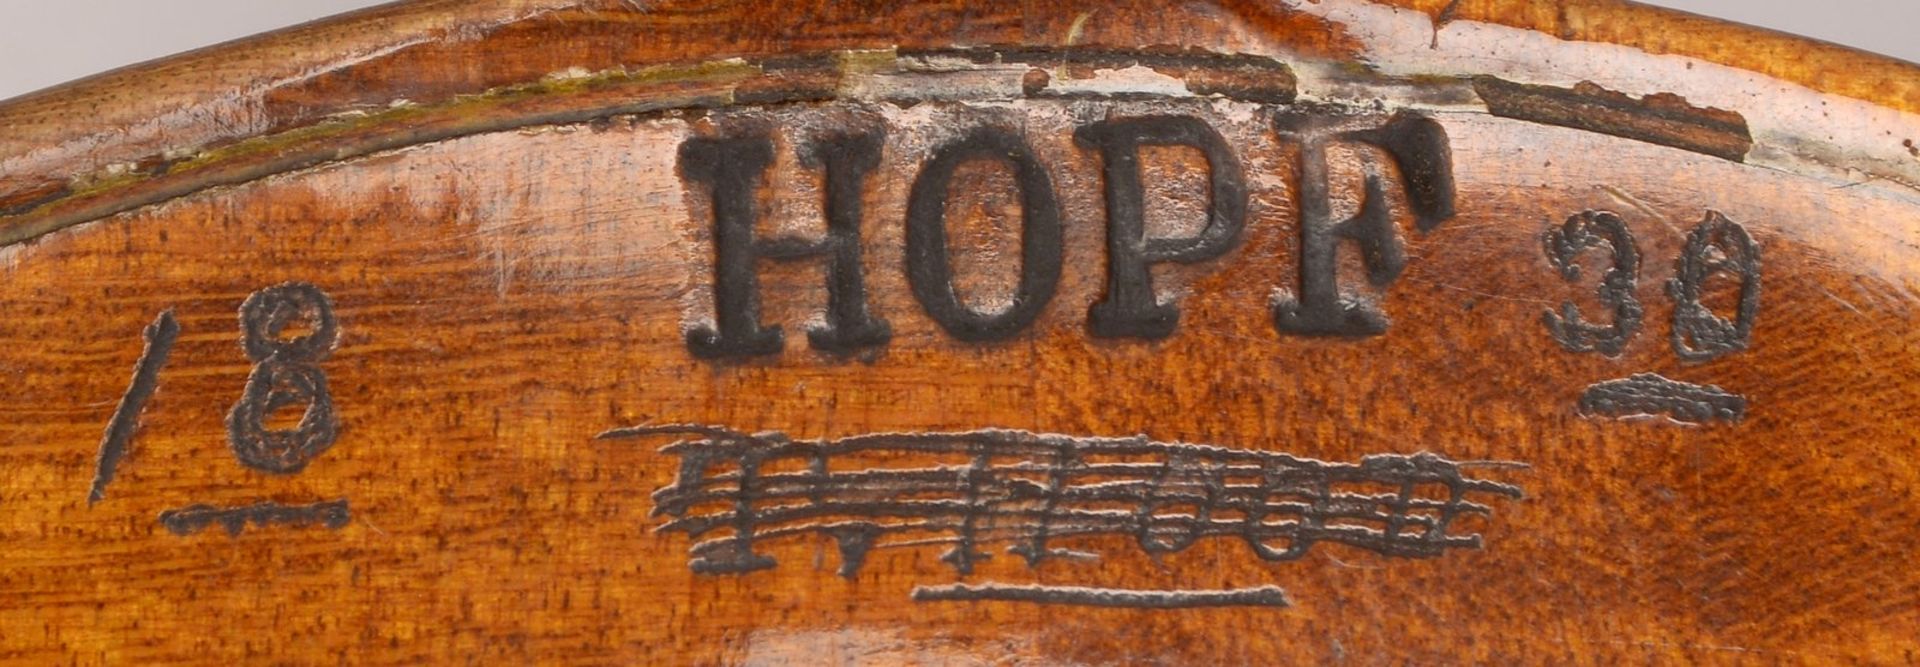 Hopf/Klingenthal, alte Geige, r&uuml;ckseitig gemarkt und datiert &#039;1830&#039;/mit Brandstempel, - Bild 3 aus 3